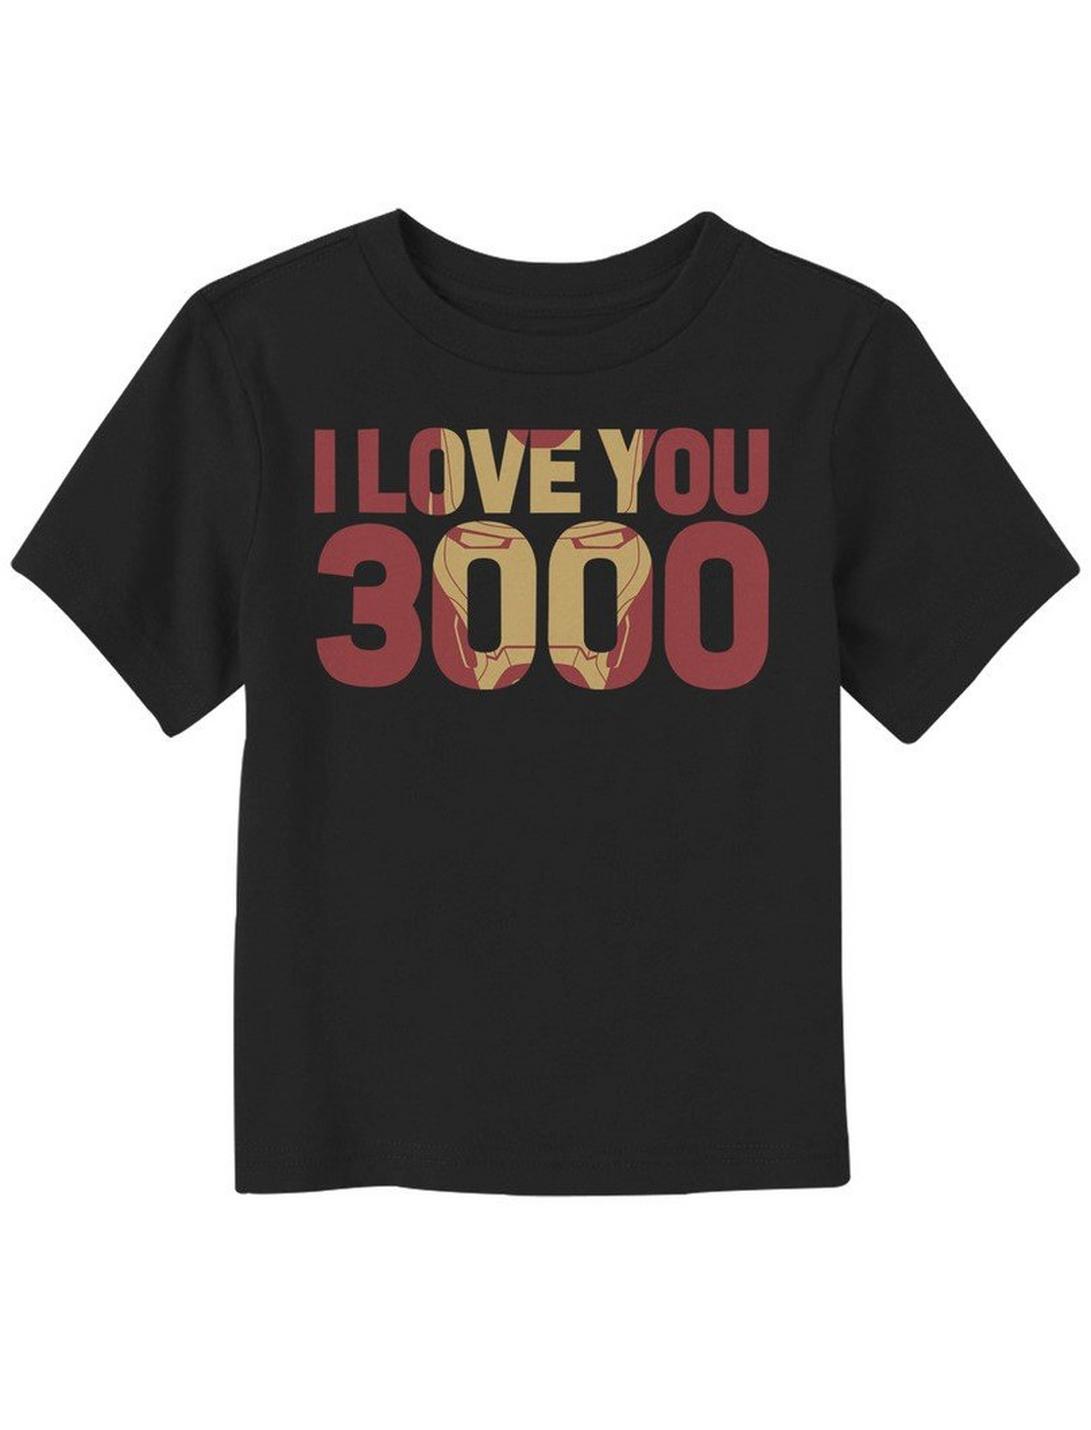 Marvel Avengers I Love You 3000 Toddler T-Shirt, BLACK, hi-res